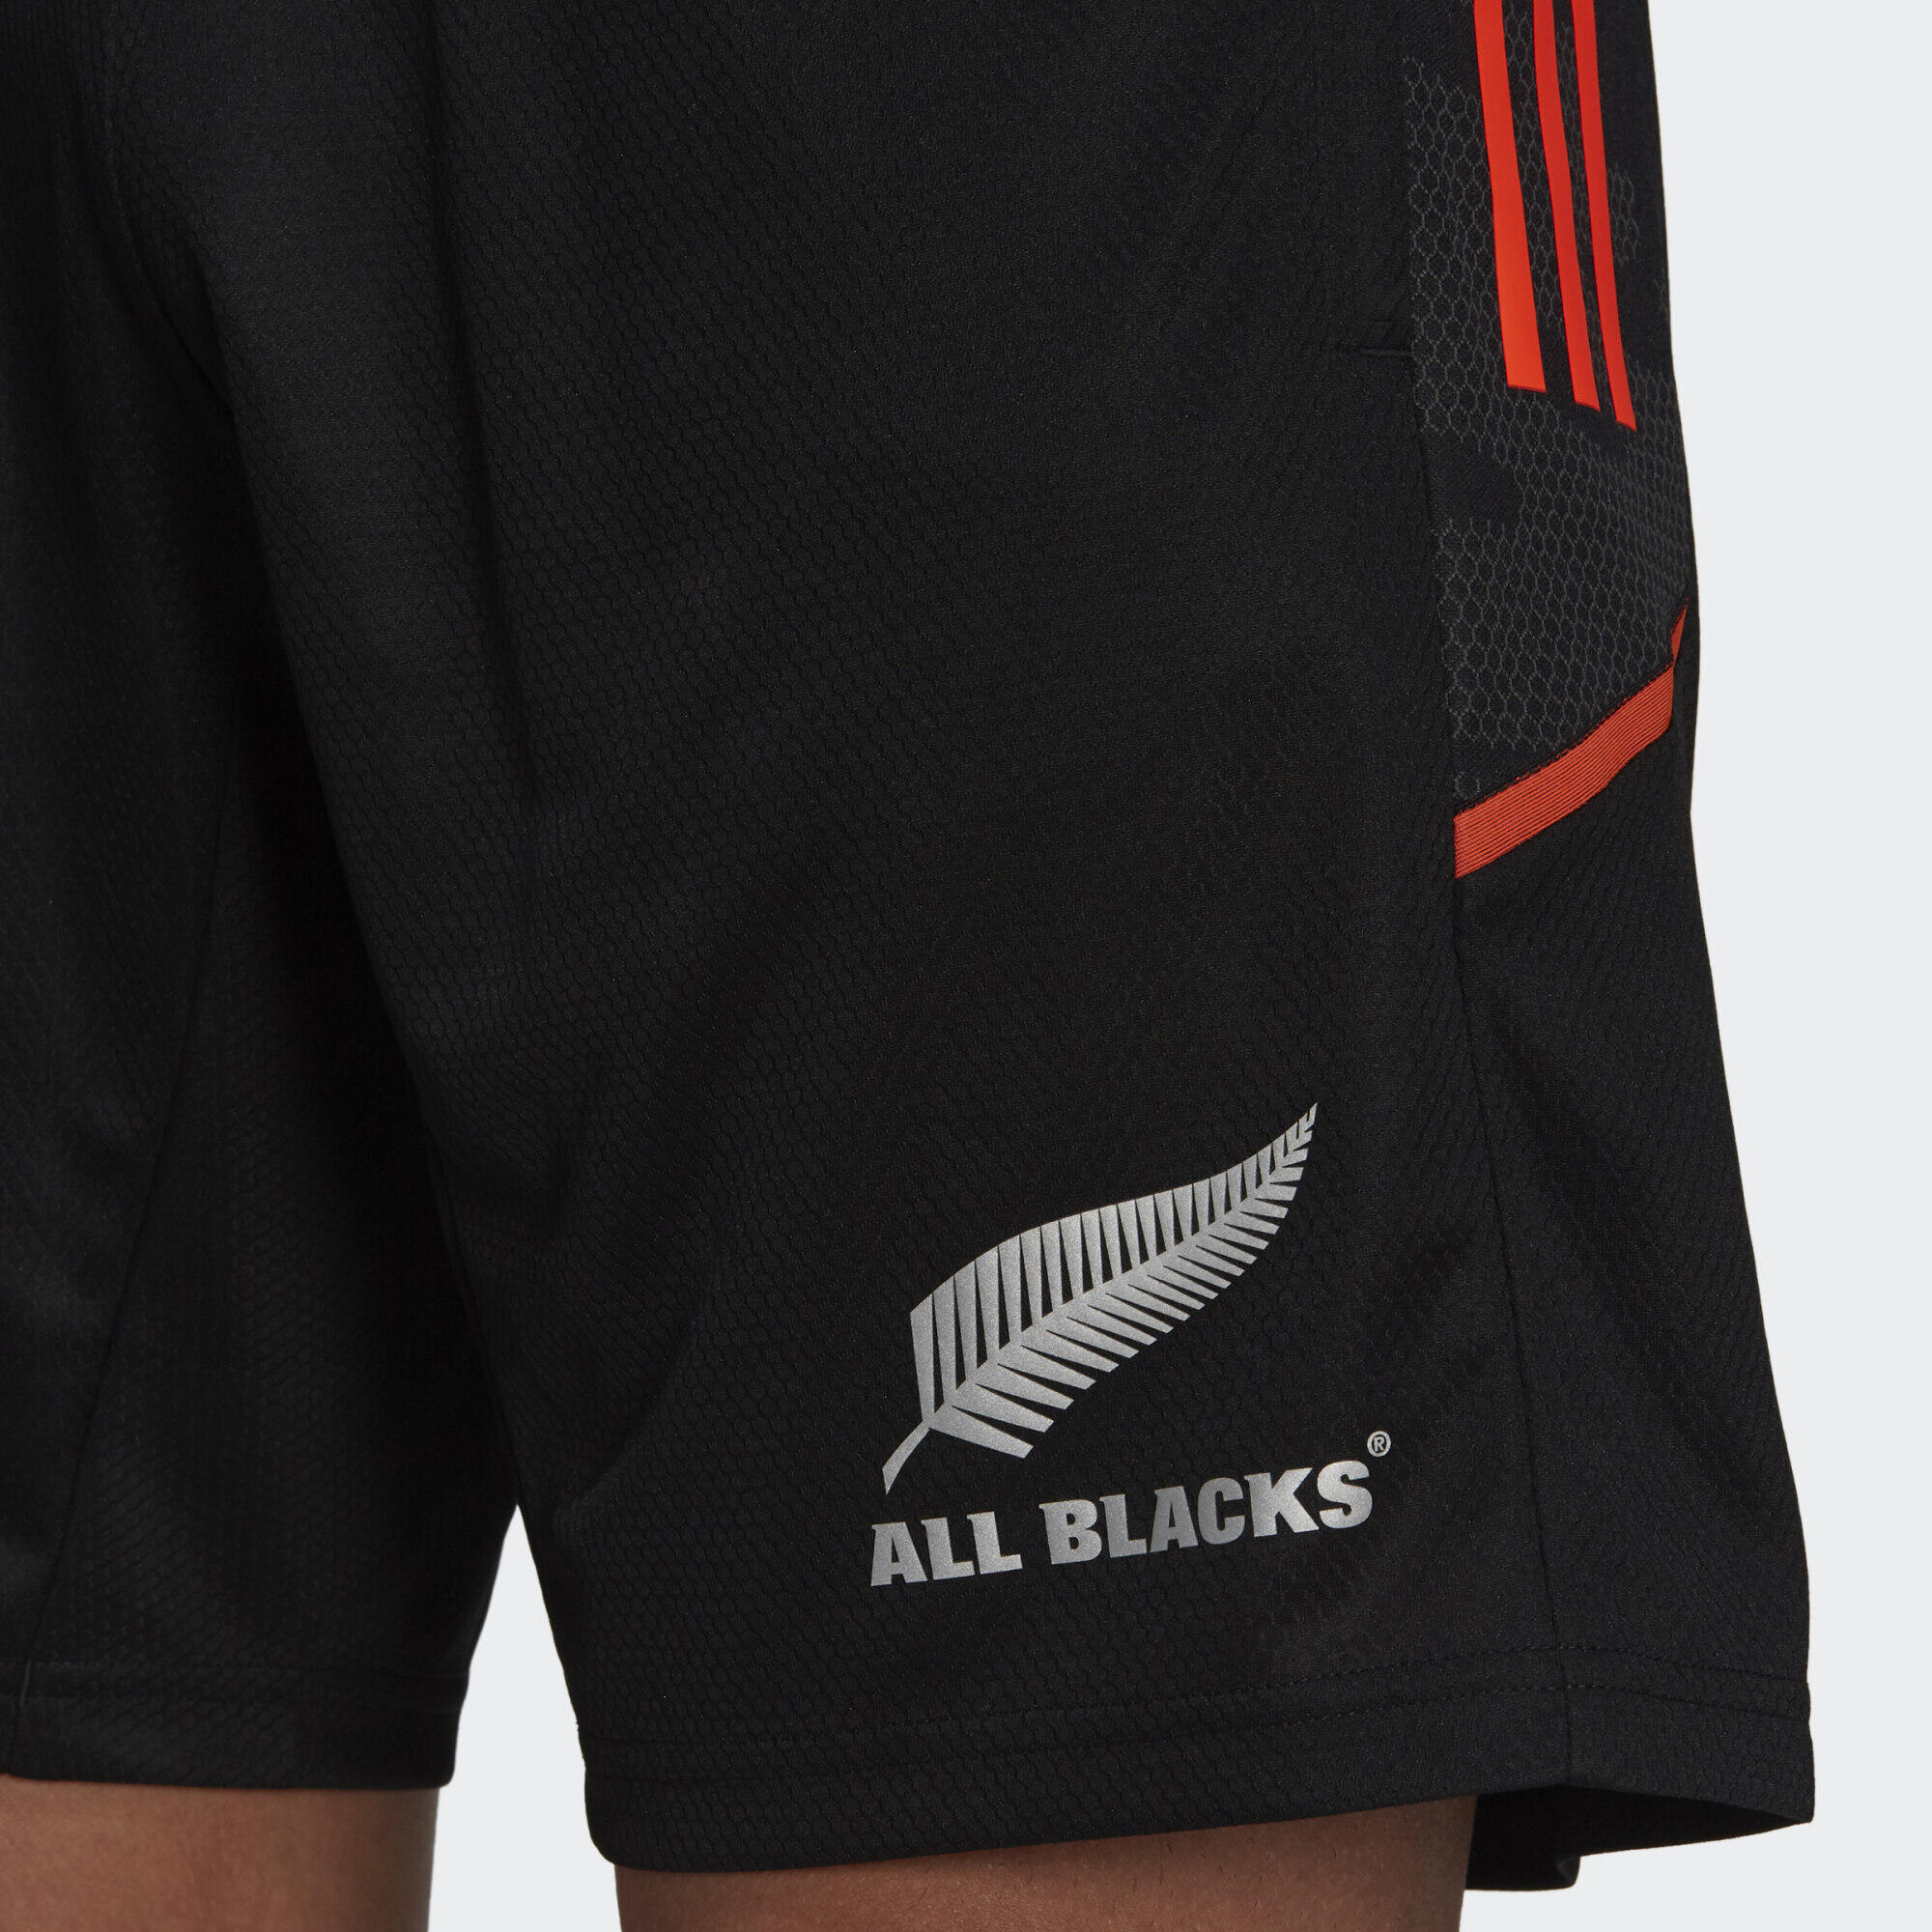 All Blacks Rugby Gym Shorts 5/5